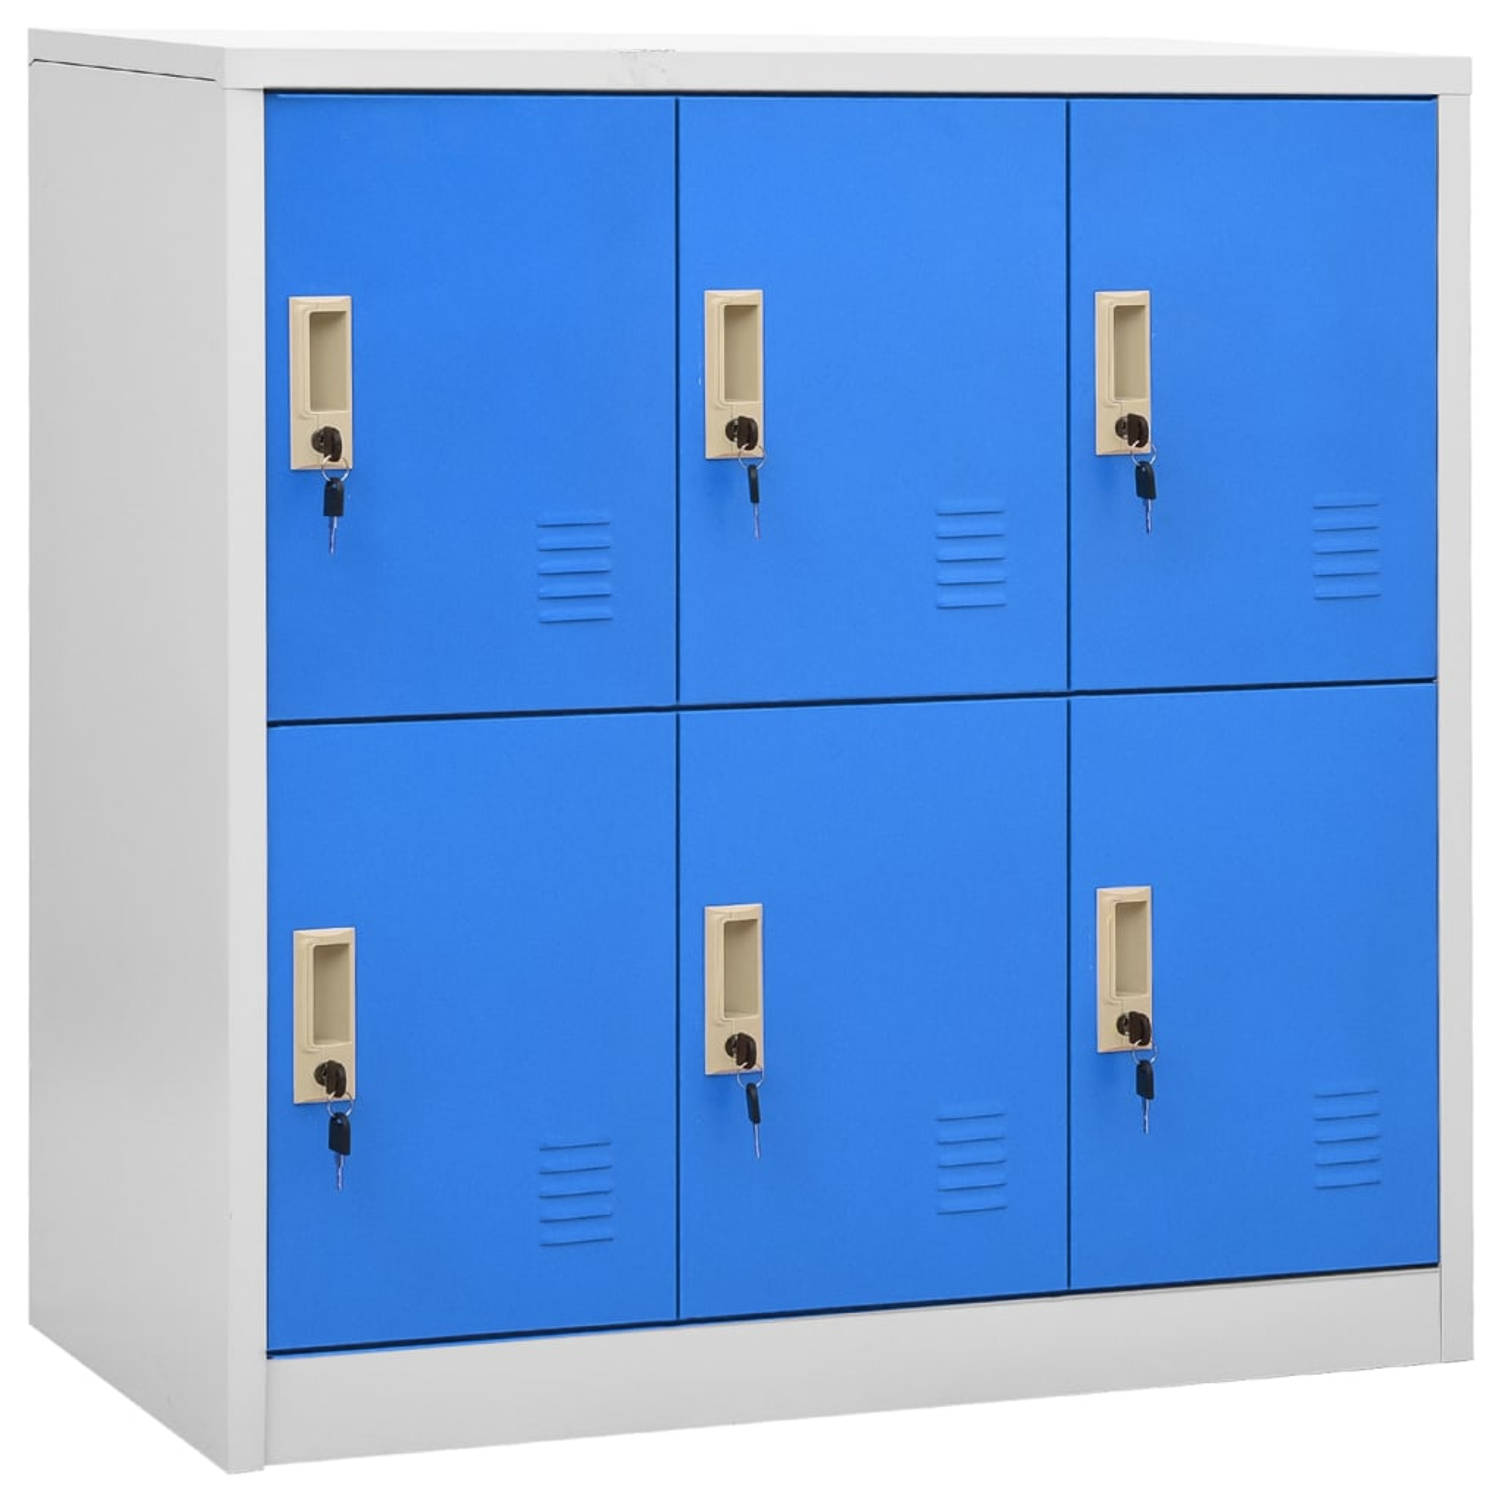 The Living Store Lockerkasten - Opbergkast van staal - 90 x 45 x 92.5 cm - 6 lockers - Lichtgrijs en blauw - Geschikt voor scholen en kantoren